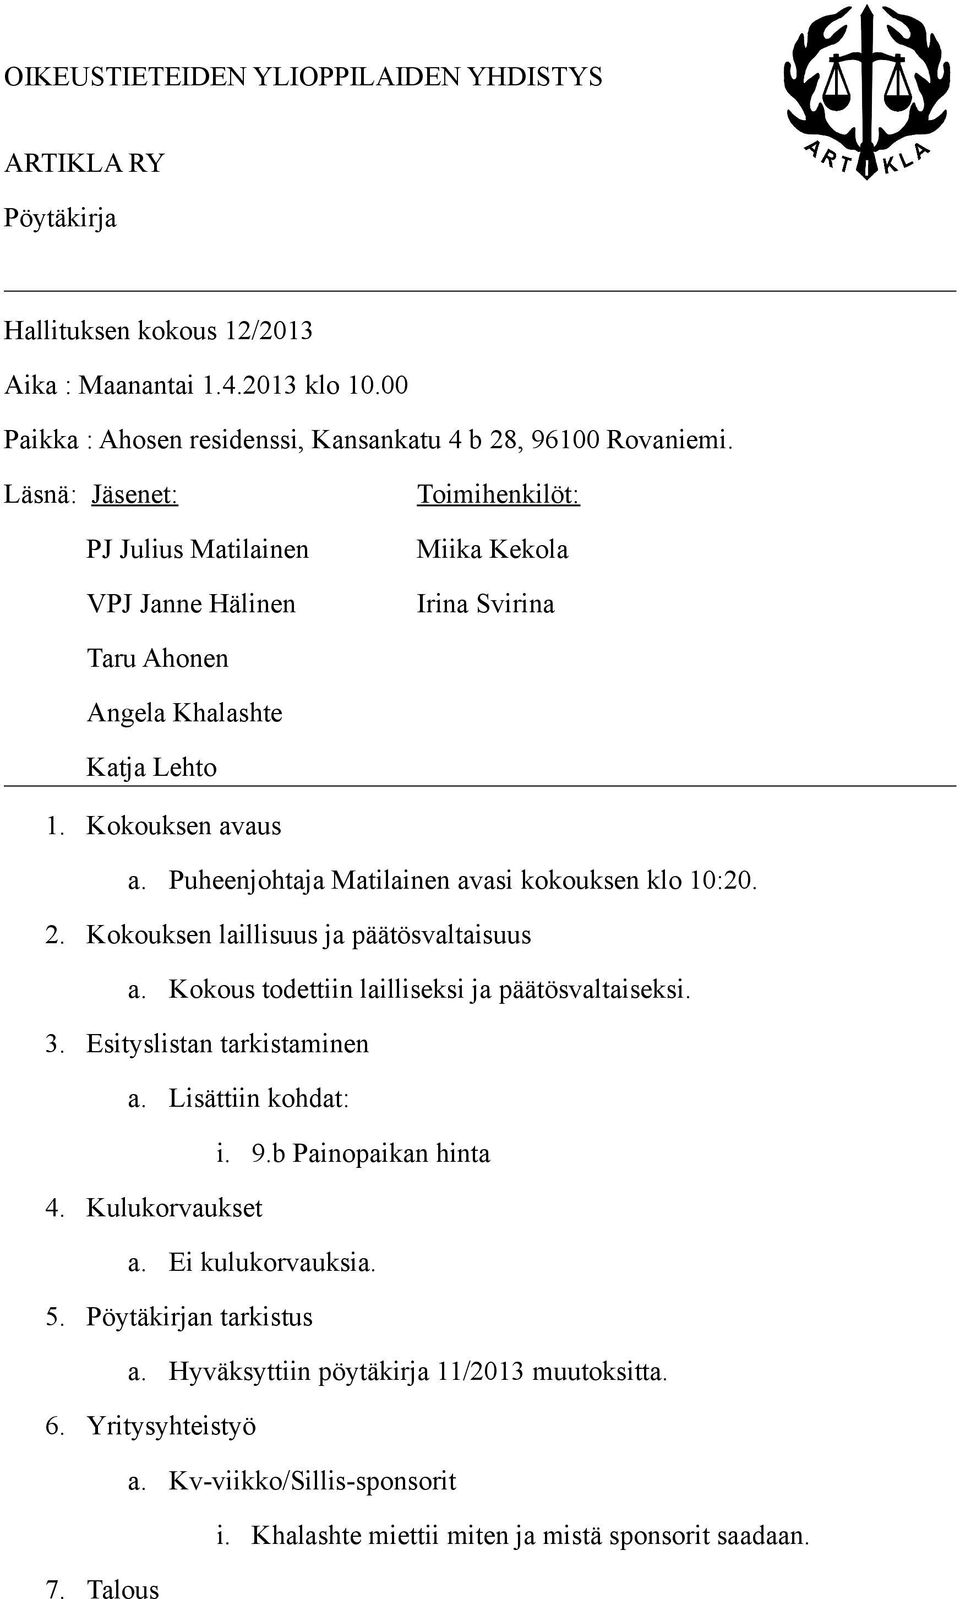 Puheenjohtaja Matilainen avasi kokouksen klo 10:20. 2. Kokouksen laillisuus ja päätösvaltaisuus a. Kokous todettiin lailliseksi ja päätösvaltaiseksi. 3. Esityslistan tarkistaminen a.